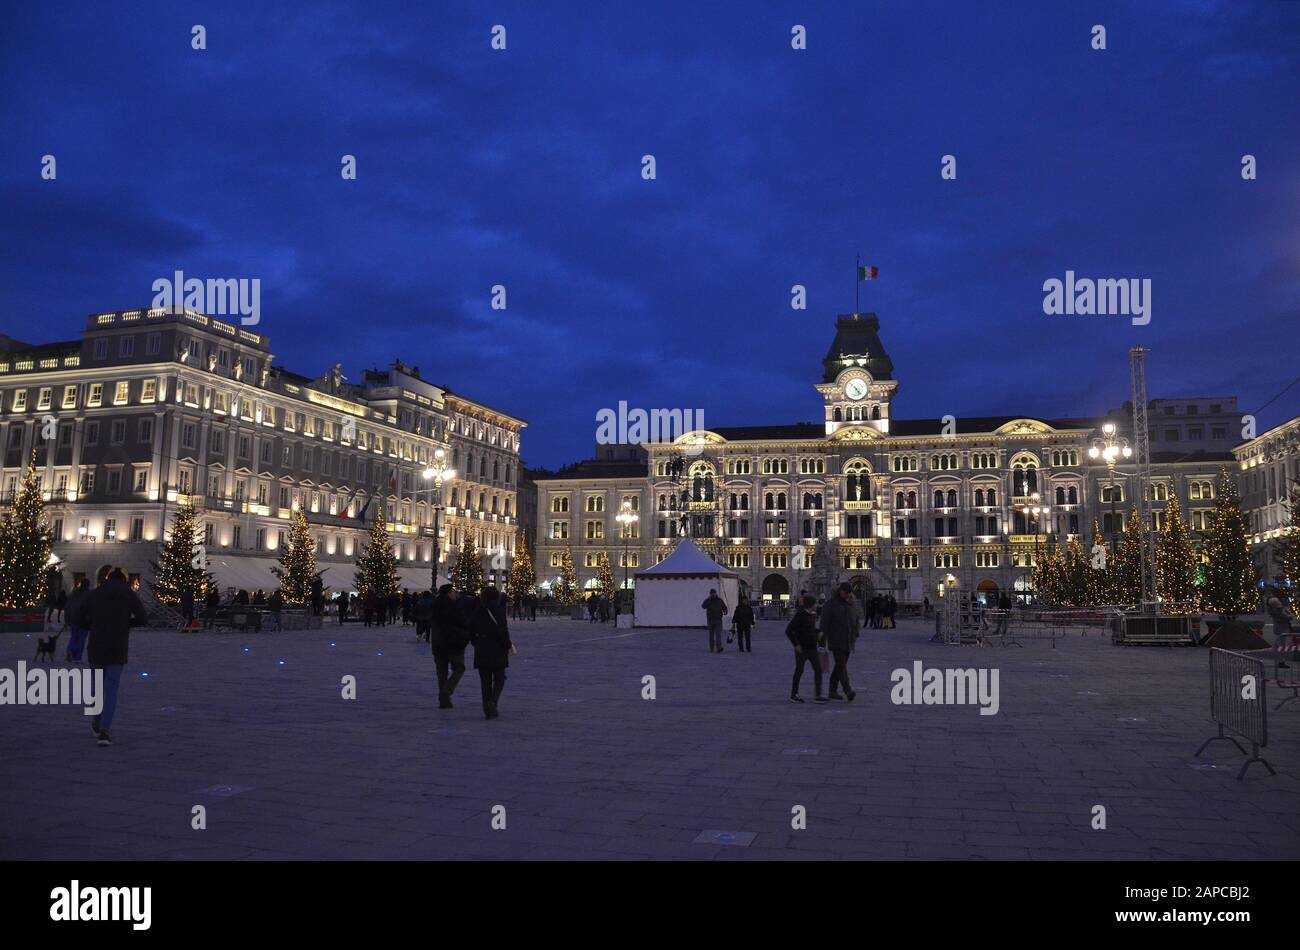 Trieste, Italien: Hafenstadt an der Adria: Rathaus und Platz Stock Photo